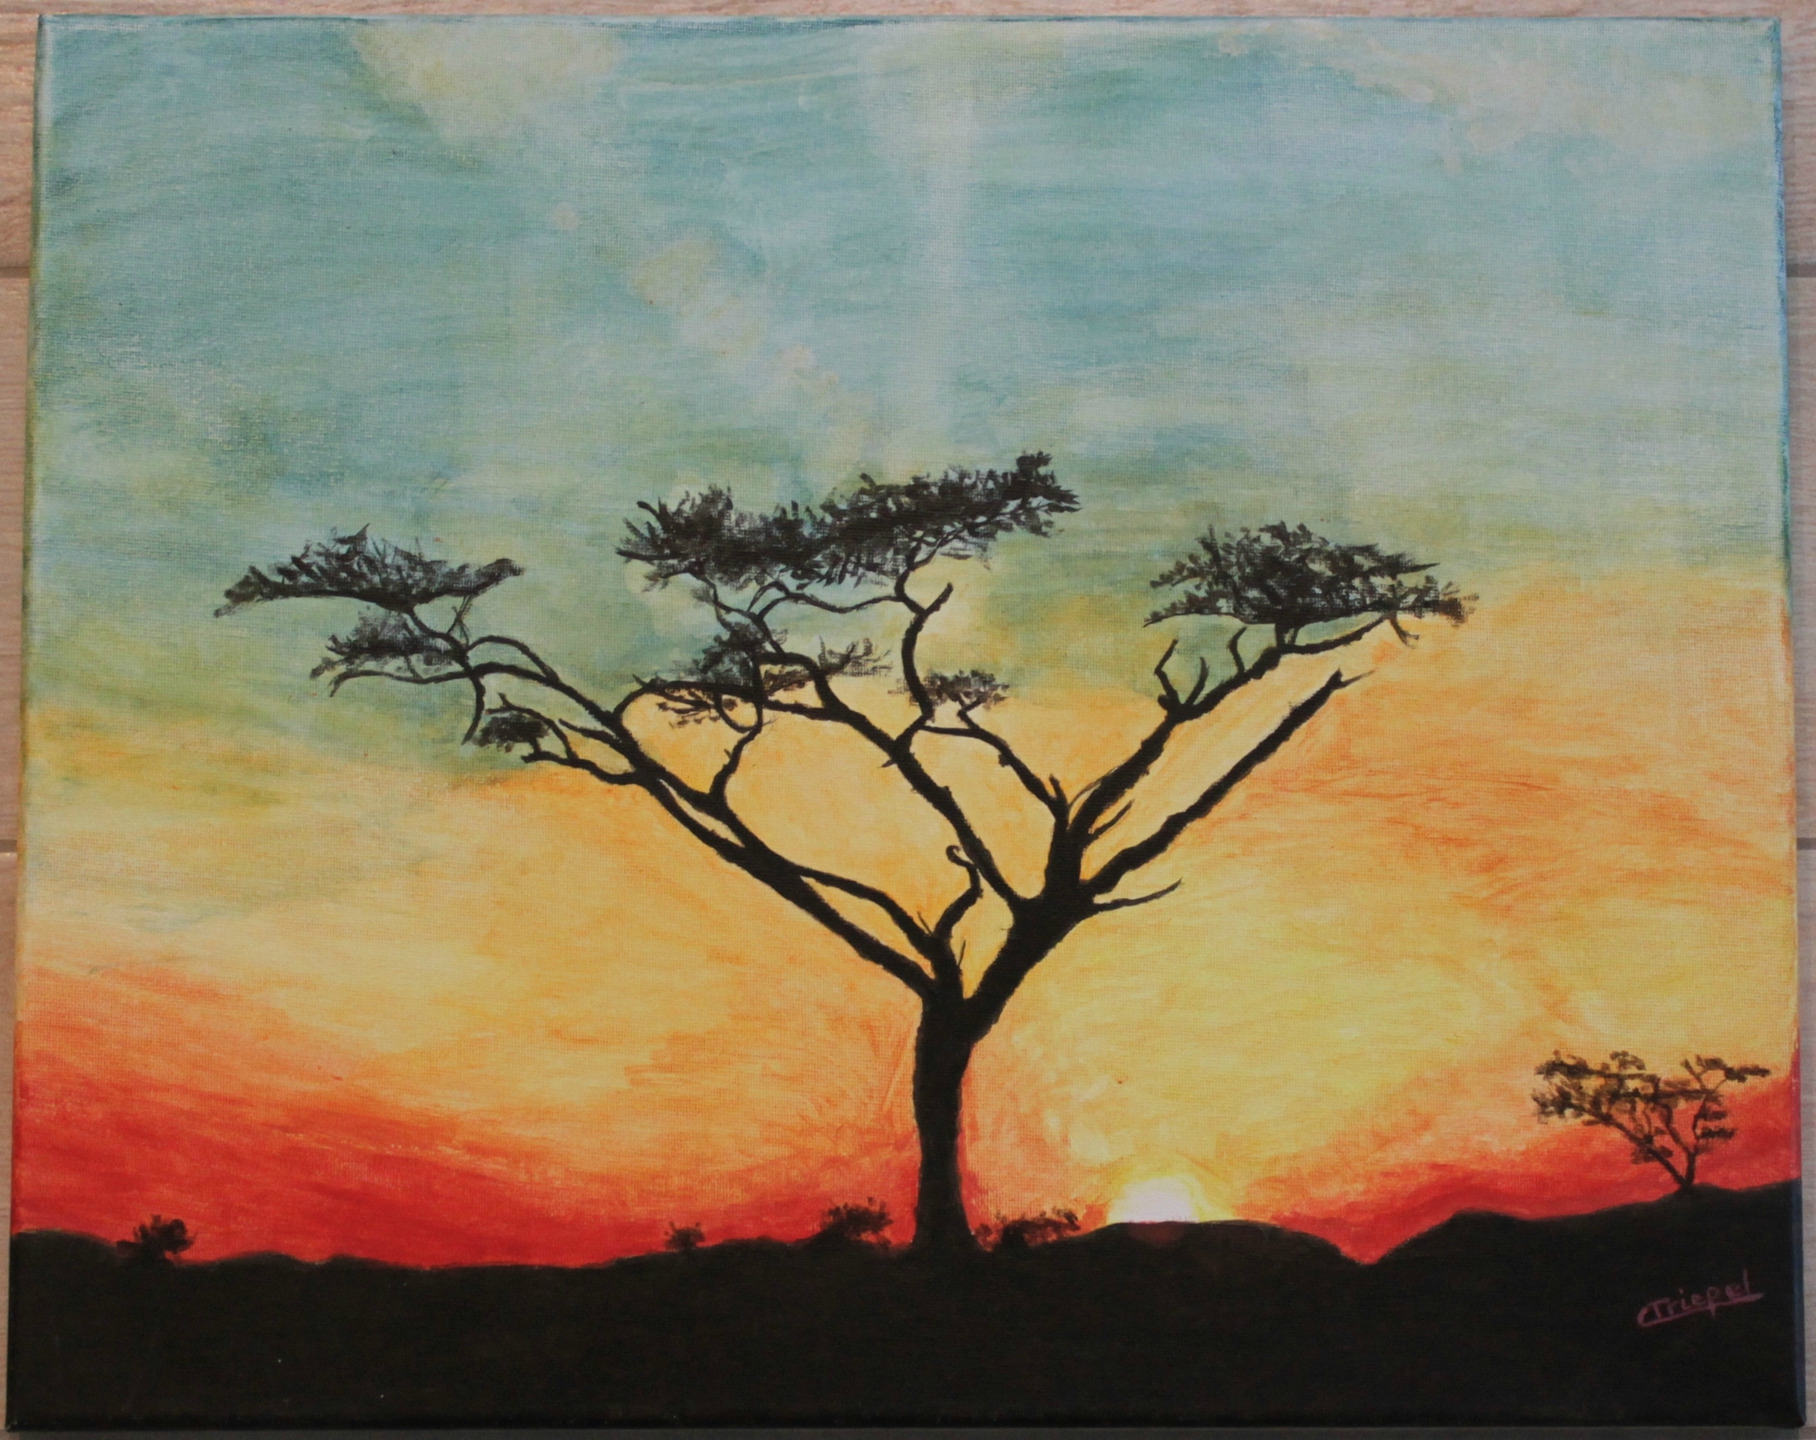 peintures-toile-peinture-acrylique-paysage-a-6162491-mg-4678-4d9d5-ada72_big  - Photo de Afrique - REGARD